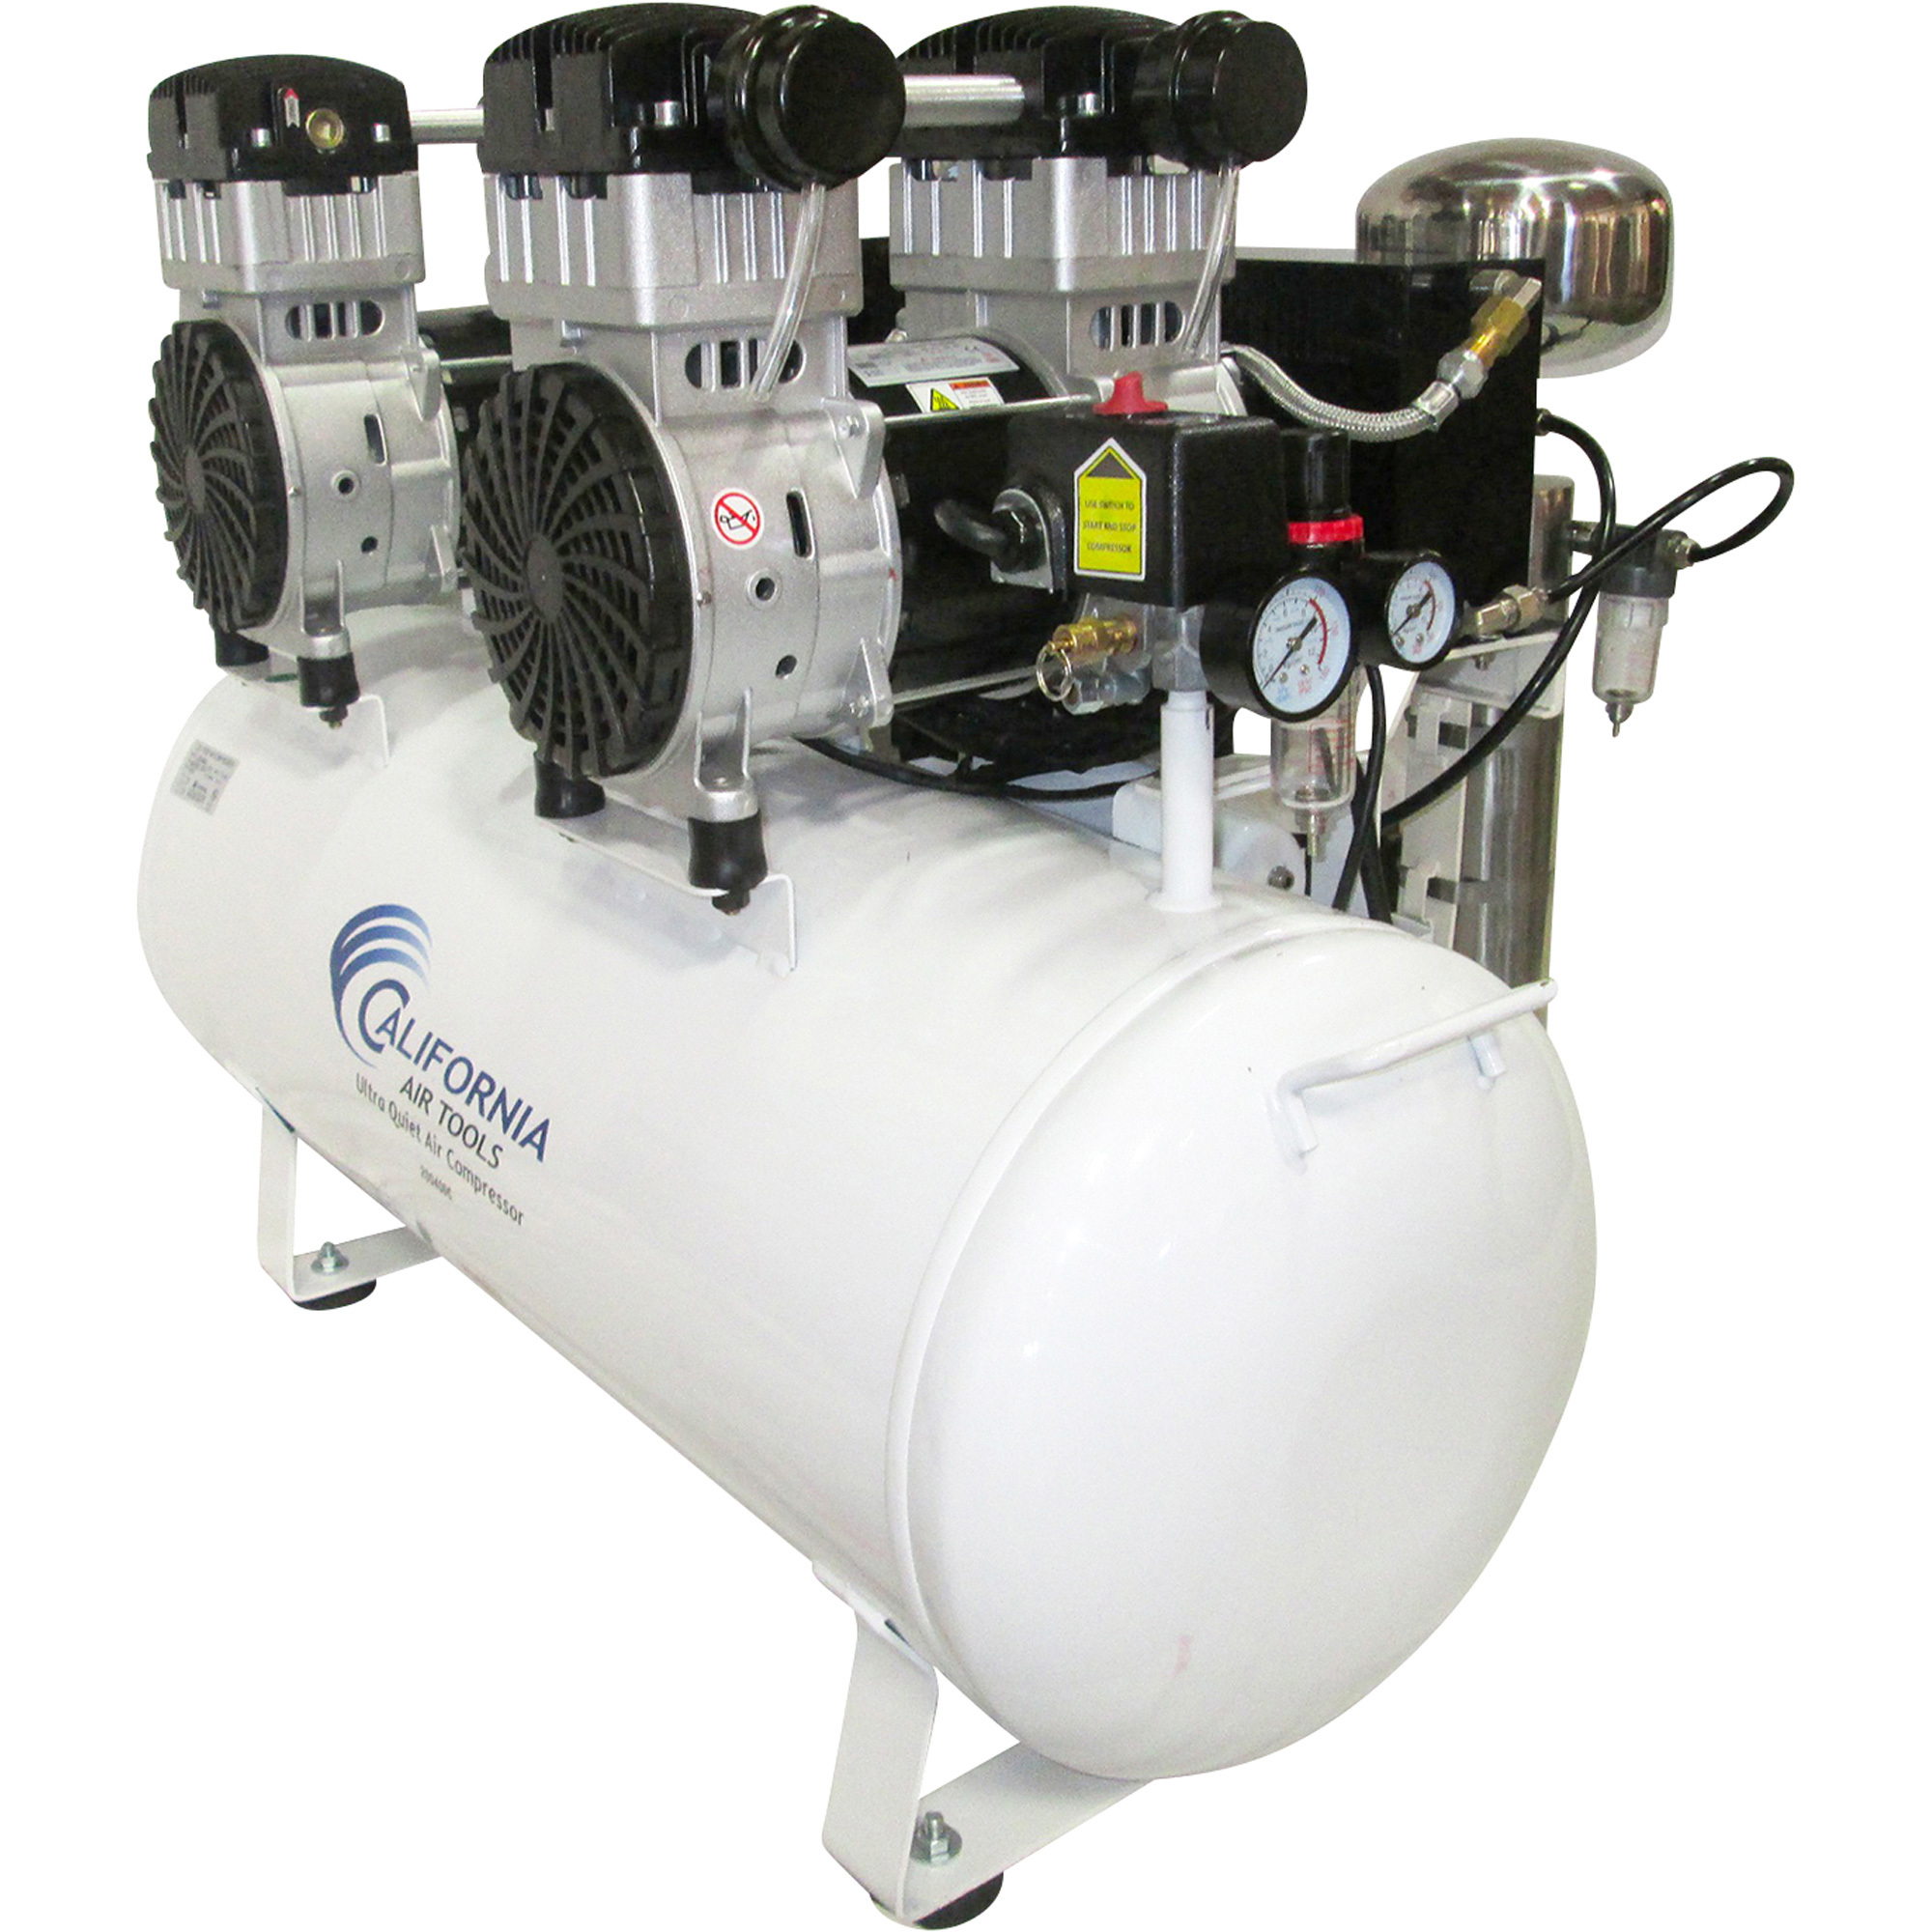 California Air Tools 20-Gallon Air Compressor, 2 HP, 14 Amps, Model CAT-20040DC